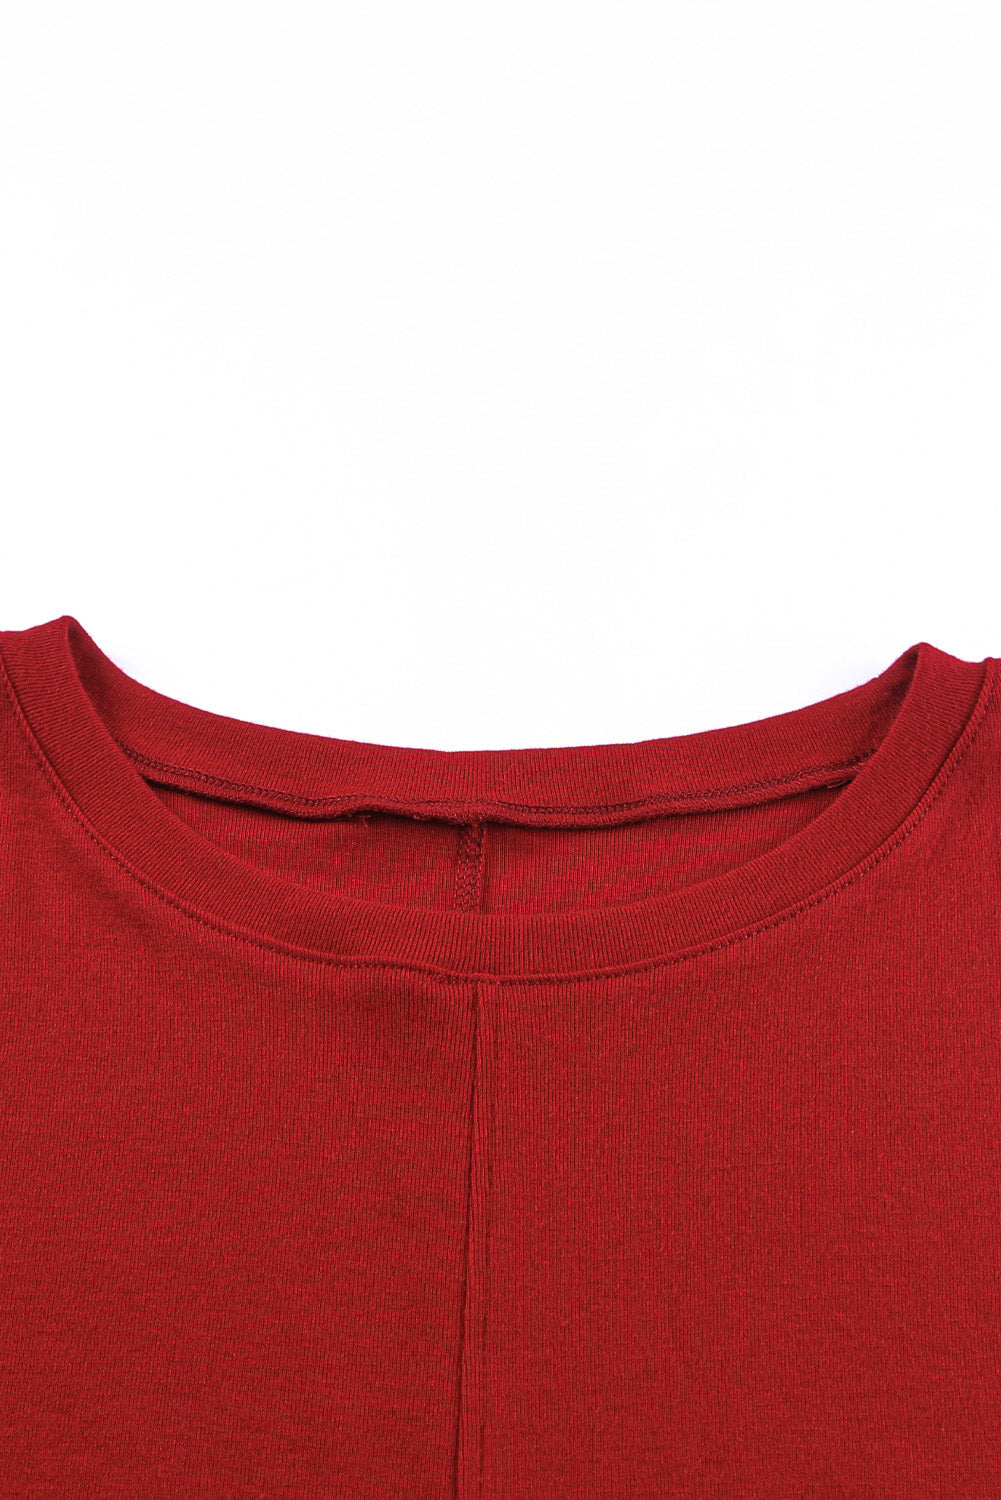 Smeđa vatrena majica dugih rukava u jednobojnoj boji